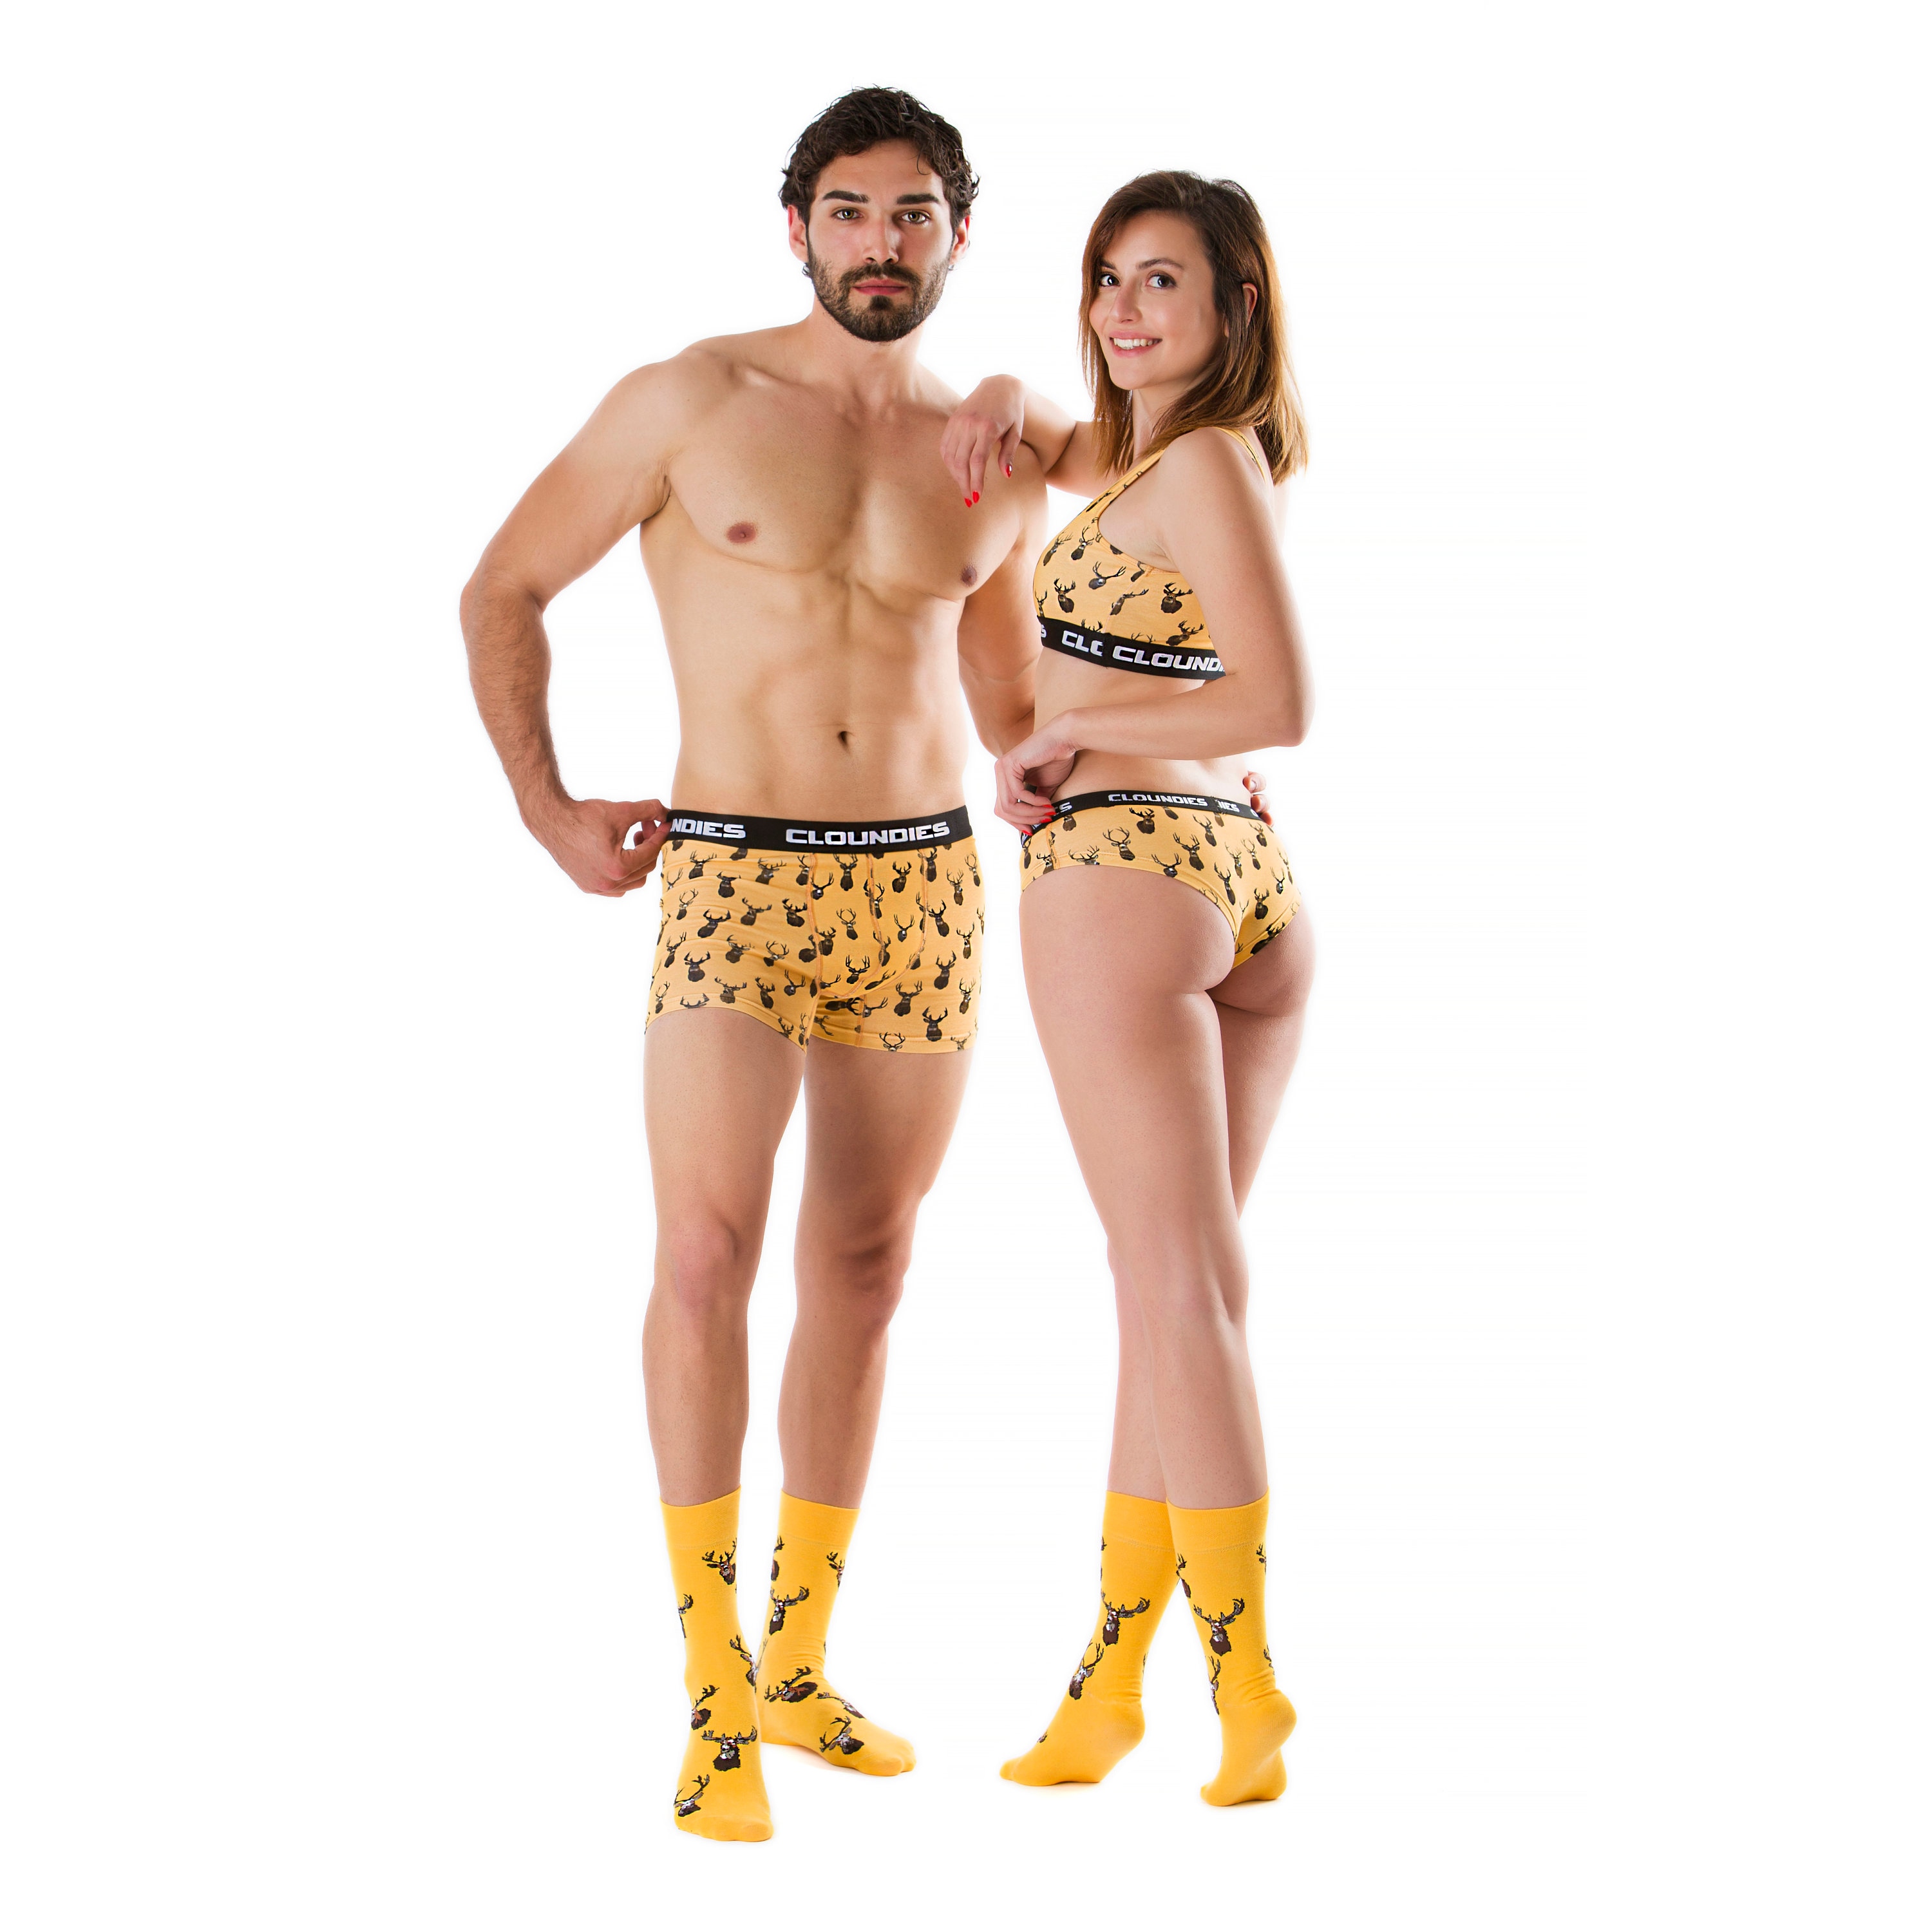 Buy Couple Matching Underwear and Socks Set by Cloundies, Deer Hunter,  Digital Printed, Underwear Set Online in India 